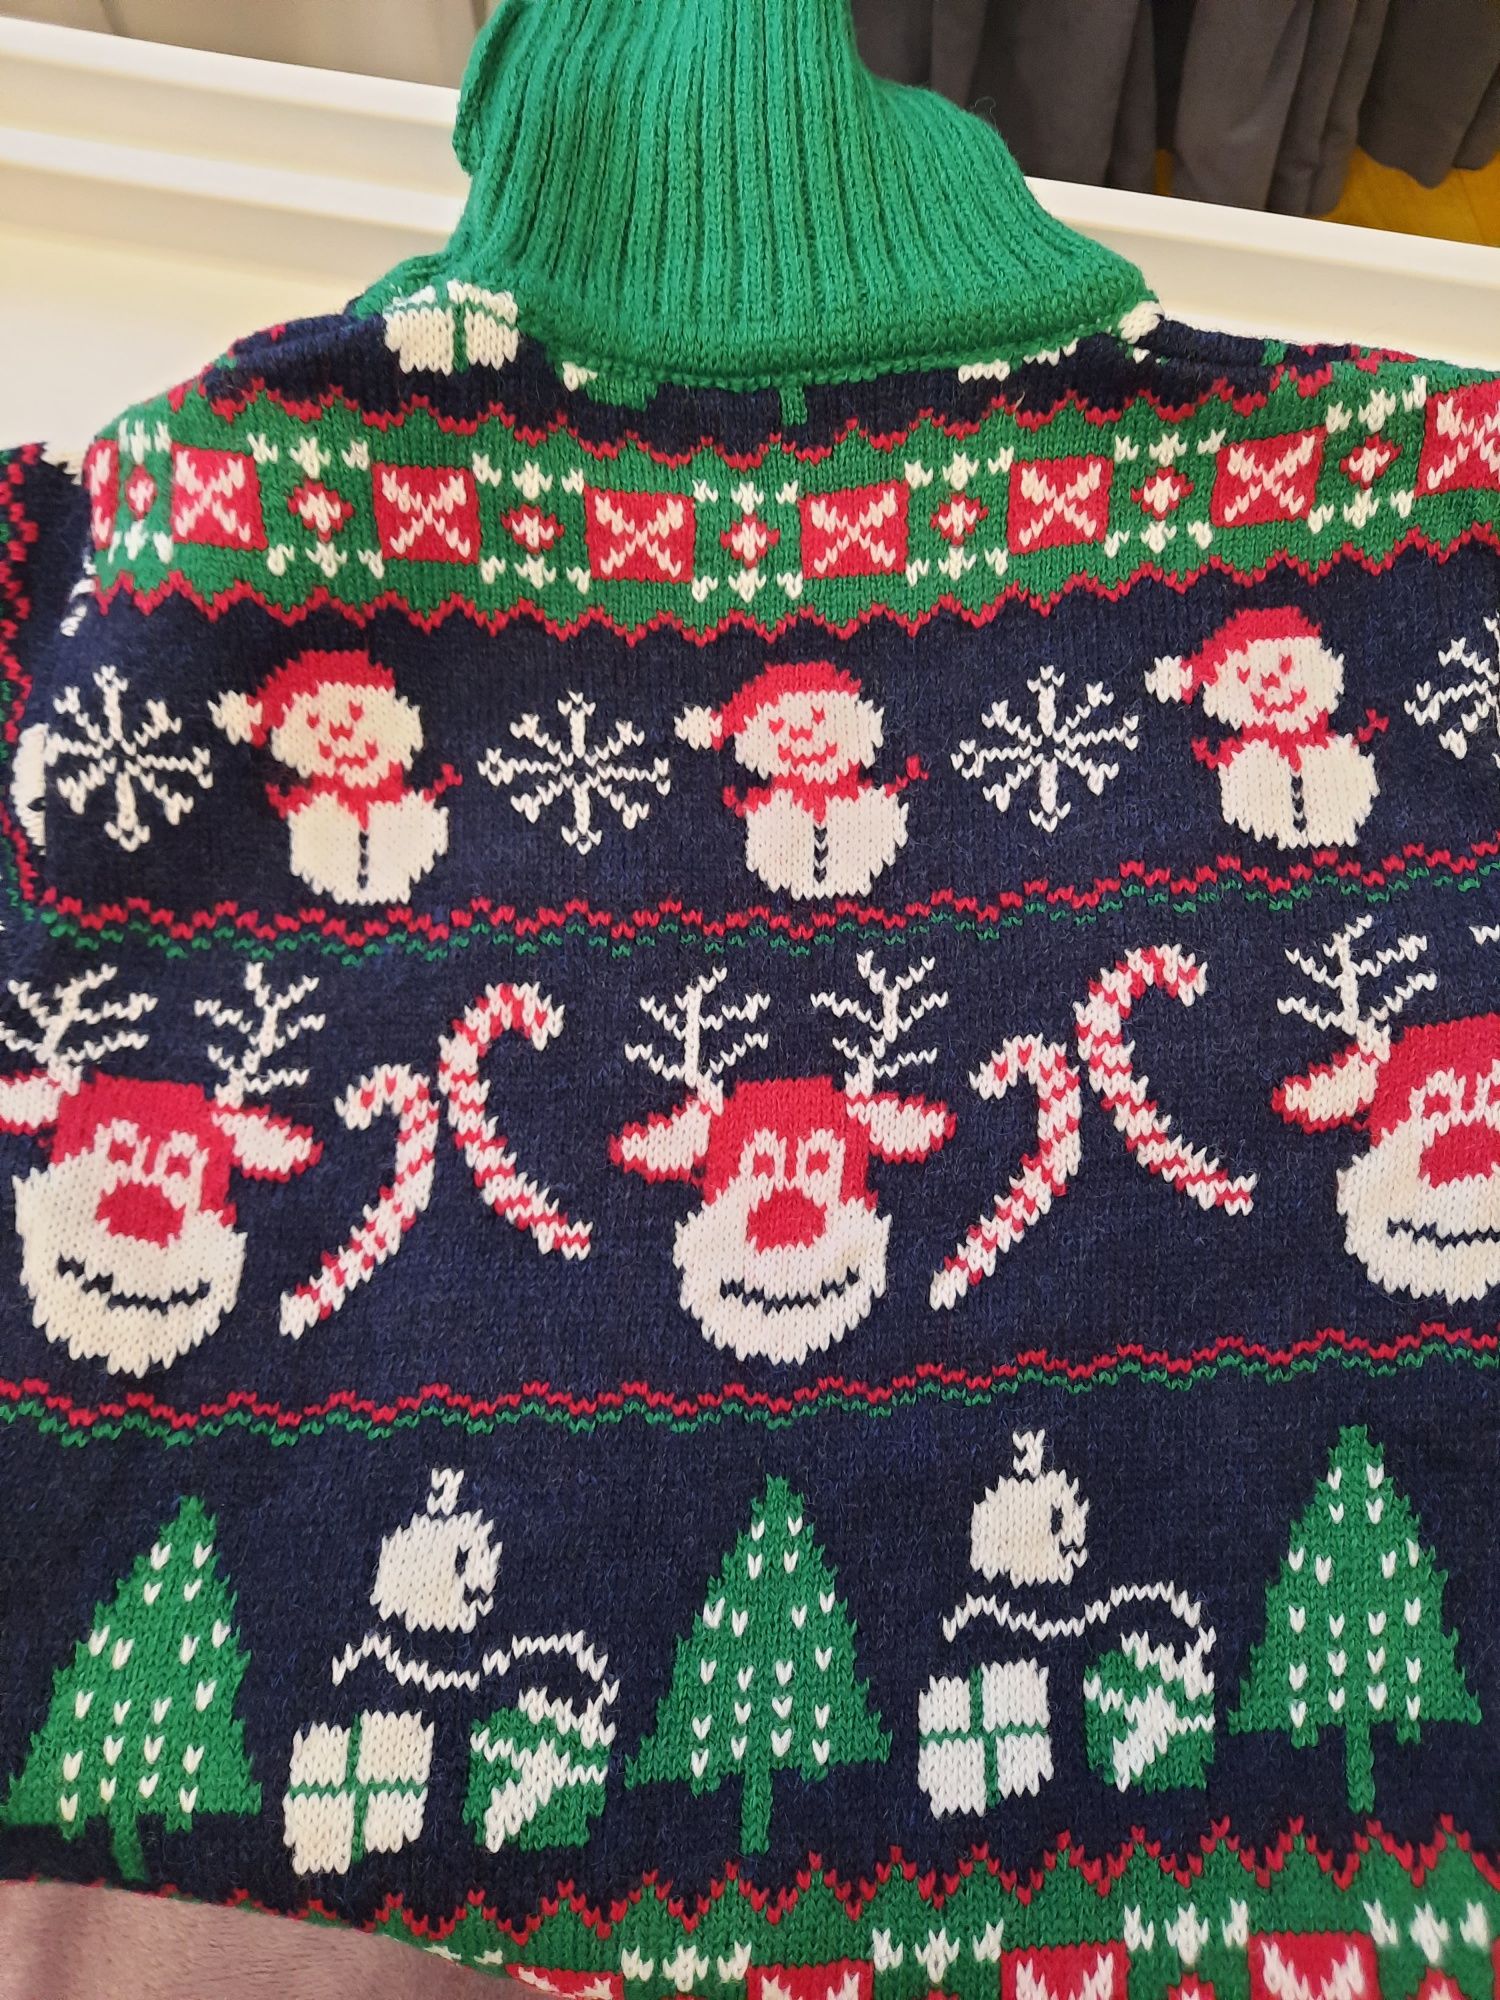 Дитячий новорічний светр